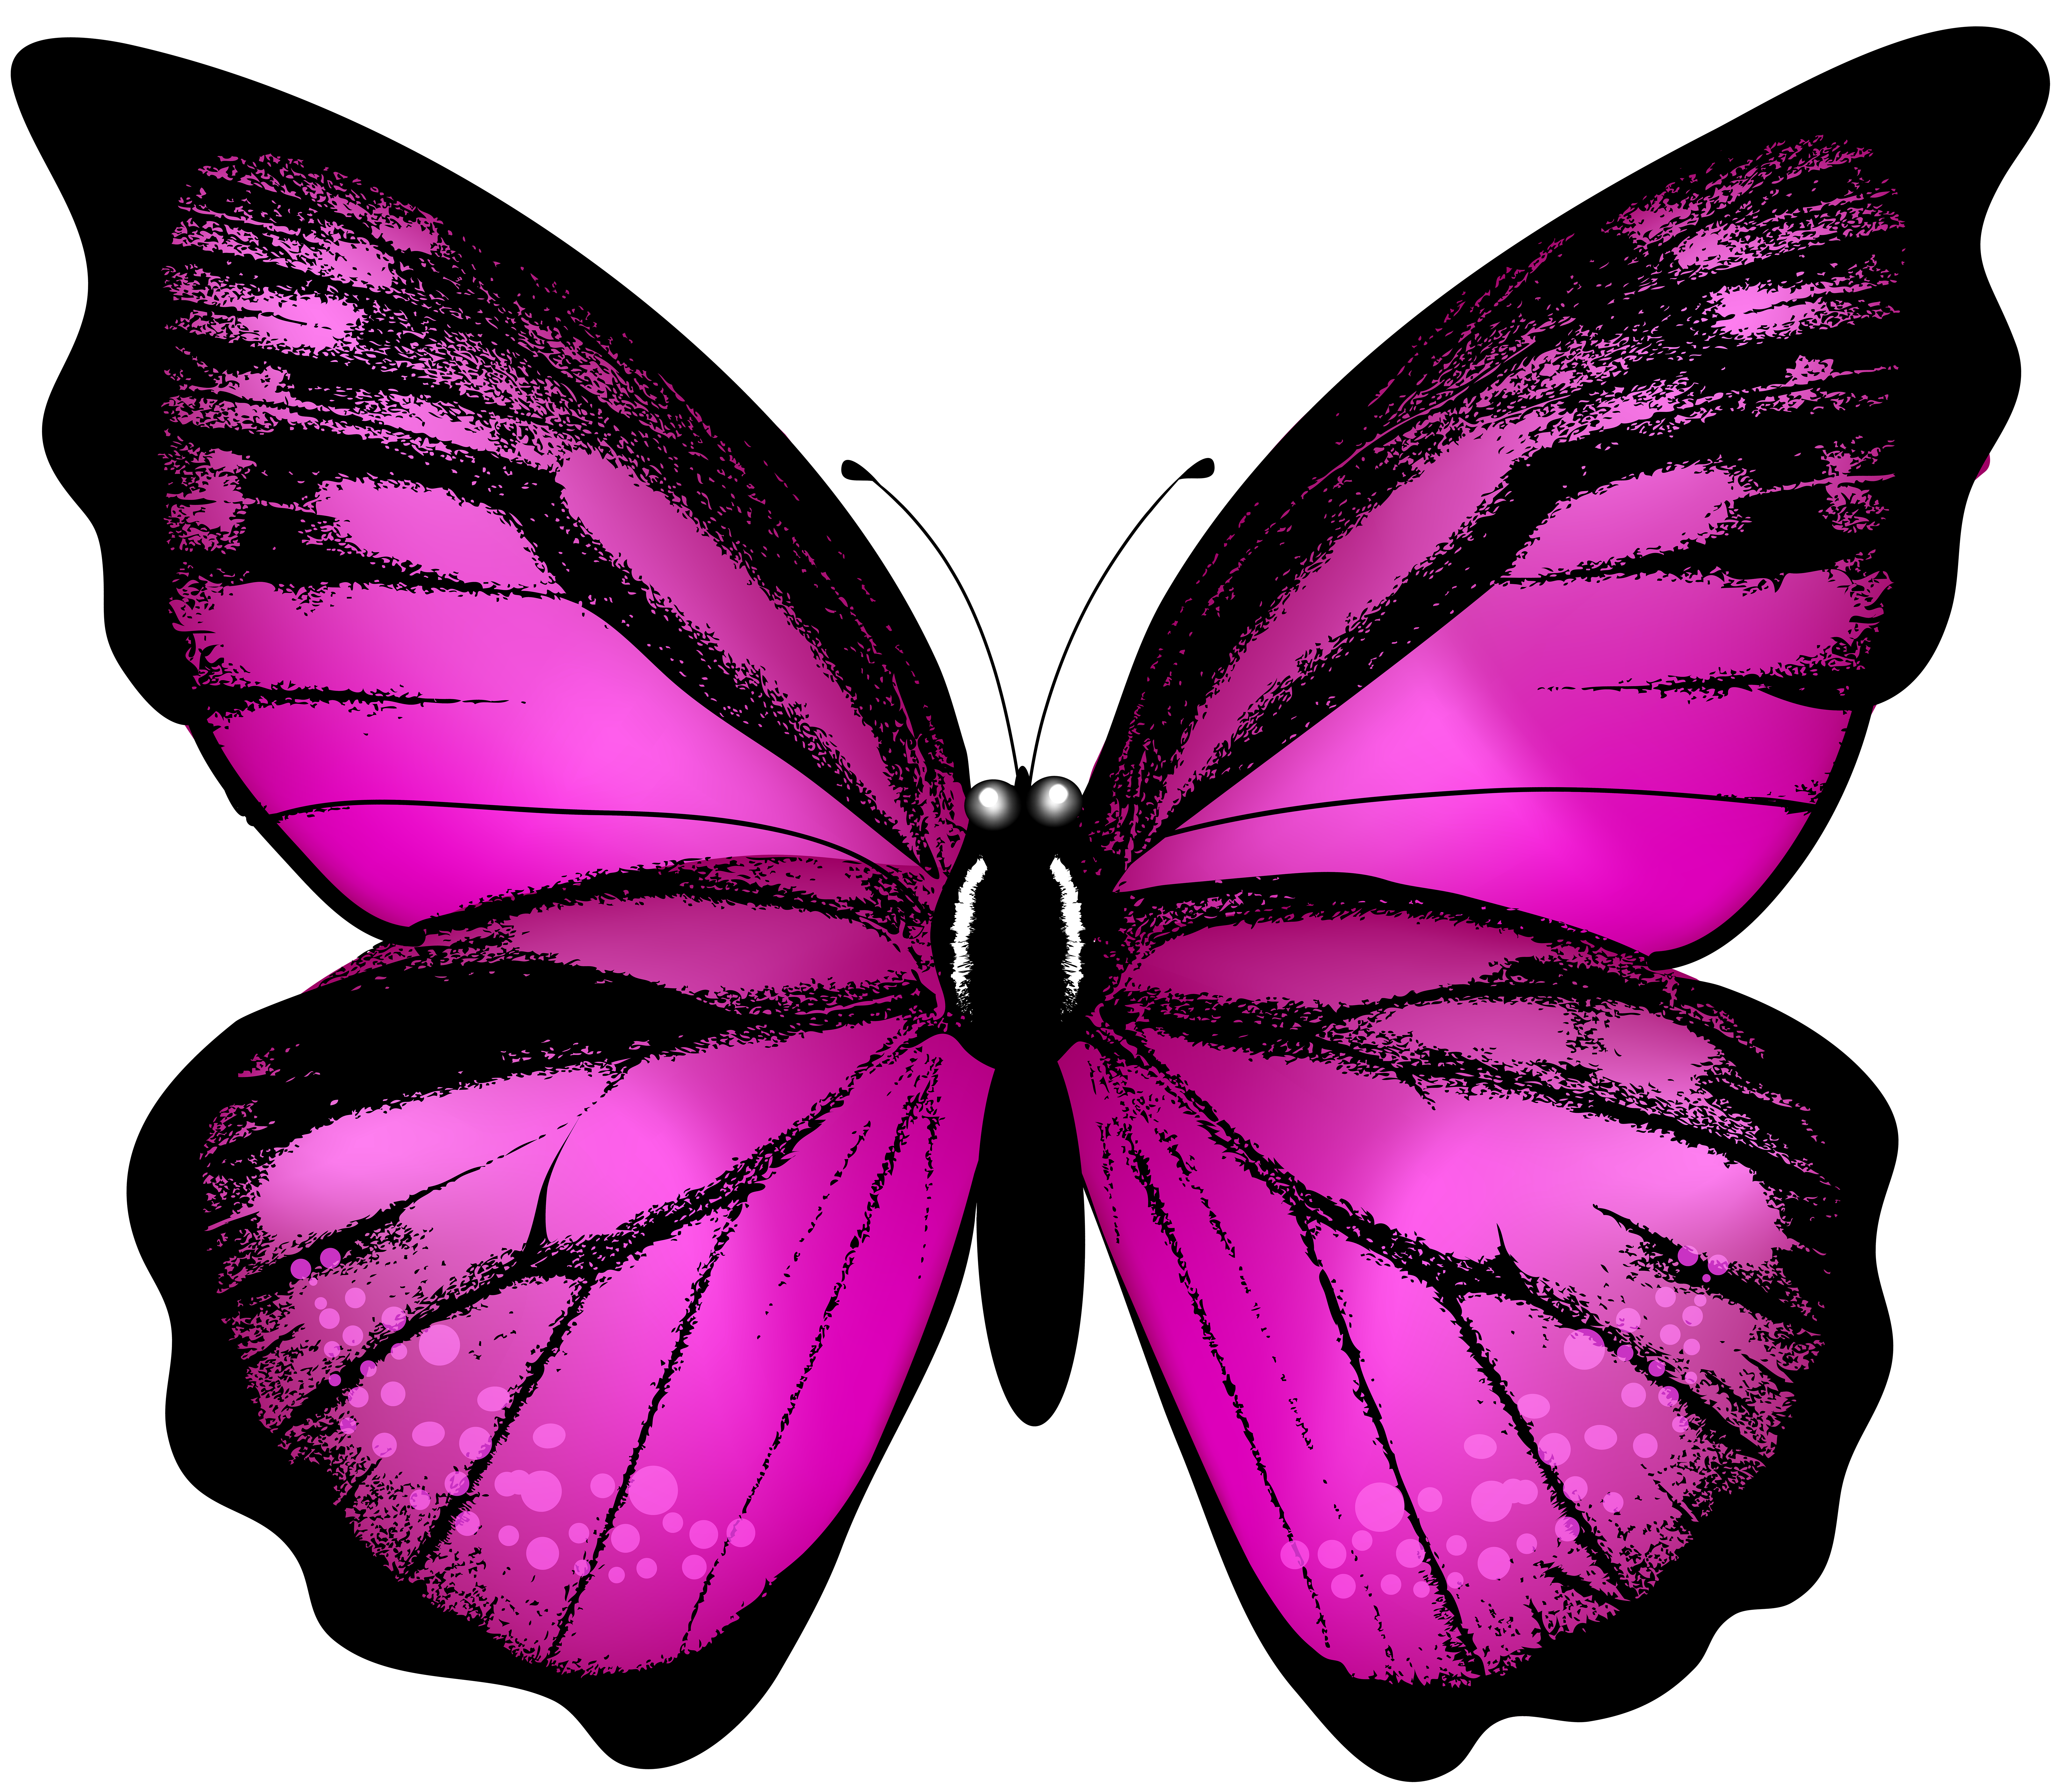 Clip art bướm hồng trong suốt sẽ giúp cho thiết kế của bạn thêm sinh động và thu hút. Hãy lựa chọn cho mình những hình ảnh clip art bướm hồng tuyệt đẹp để nâng cao sức hấp dẫn của thiết kế của mình.